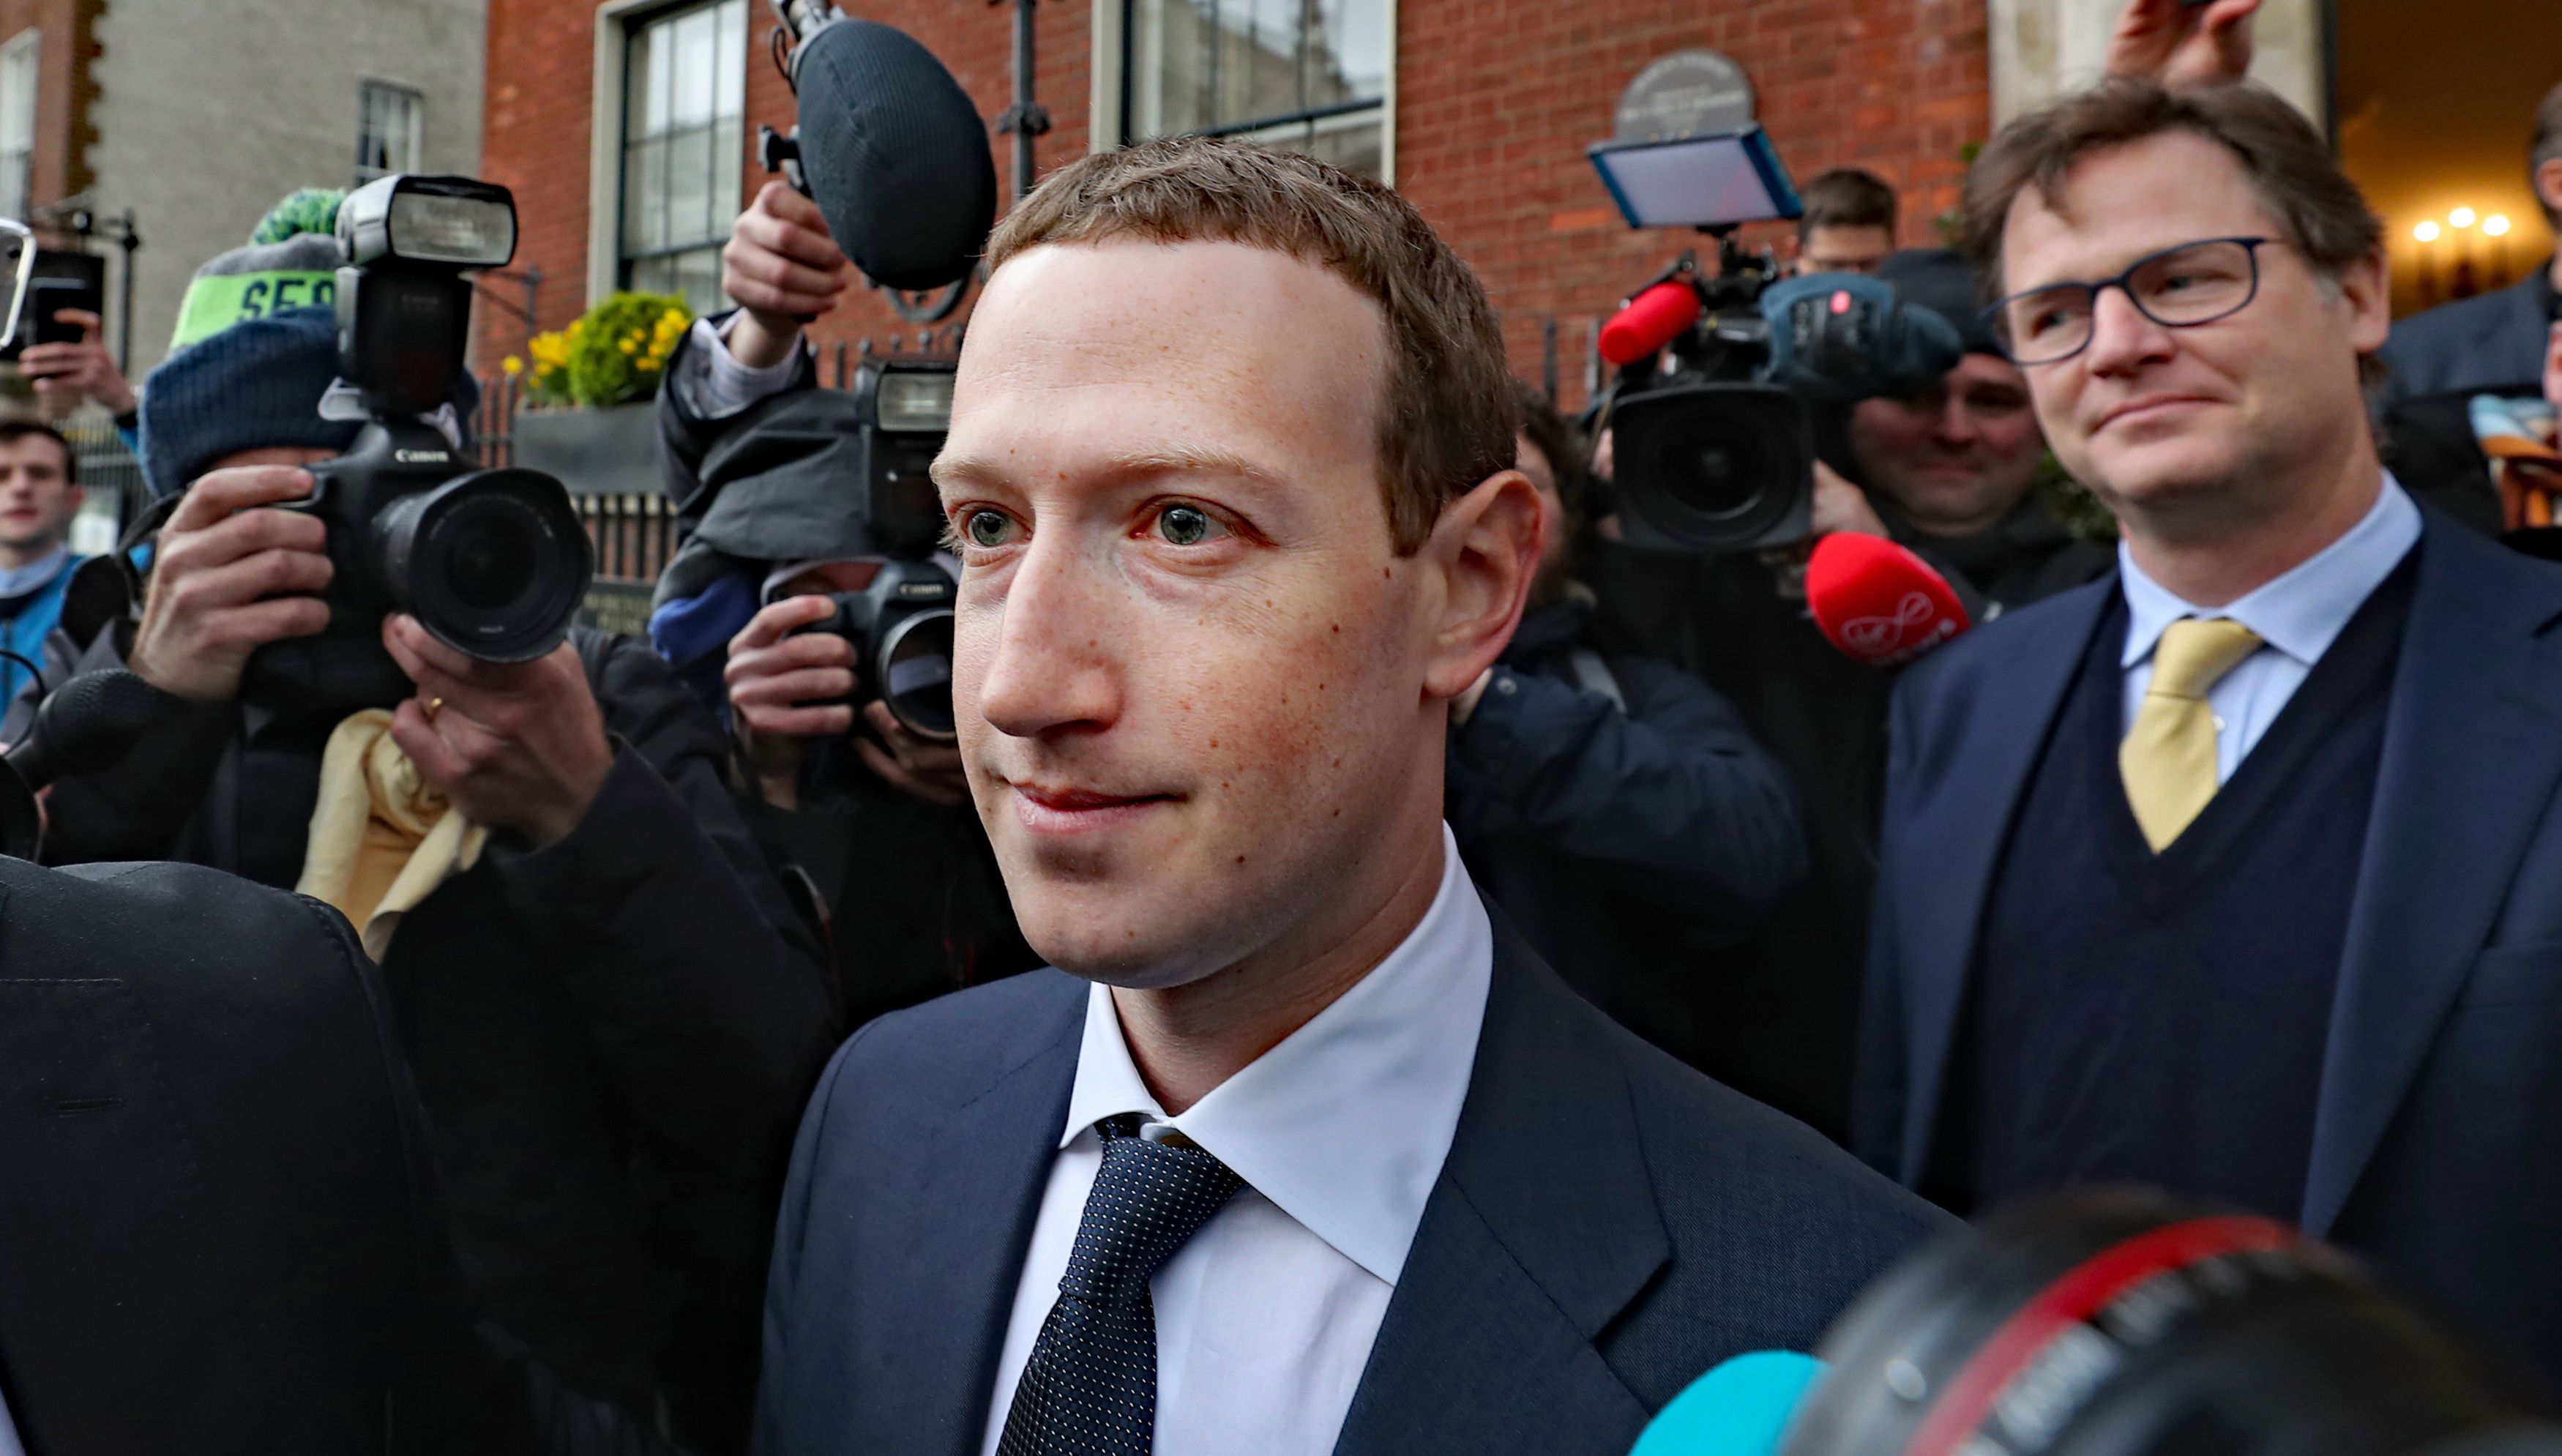  Mark Zuckerberg telah berulang kali dibanting karena kegagalan privasi dan keamanan - dan FacebookKetidakmampuan untuk menjaga aplikasinya bersih dari konten yang cerdik